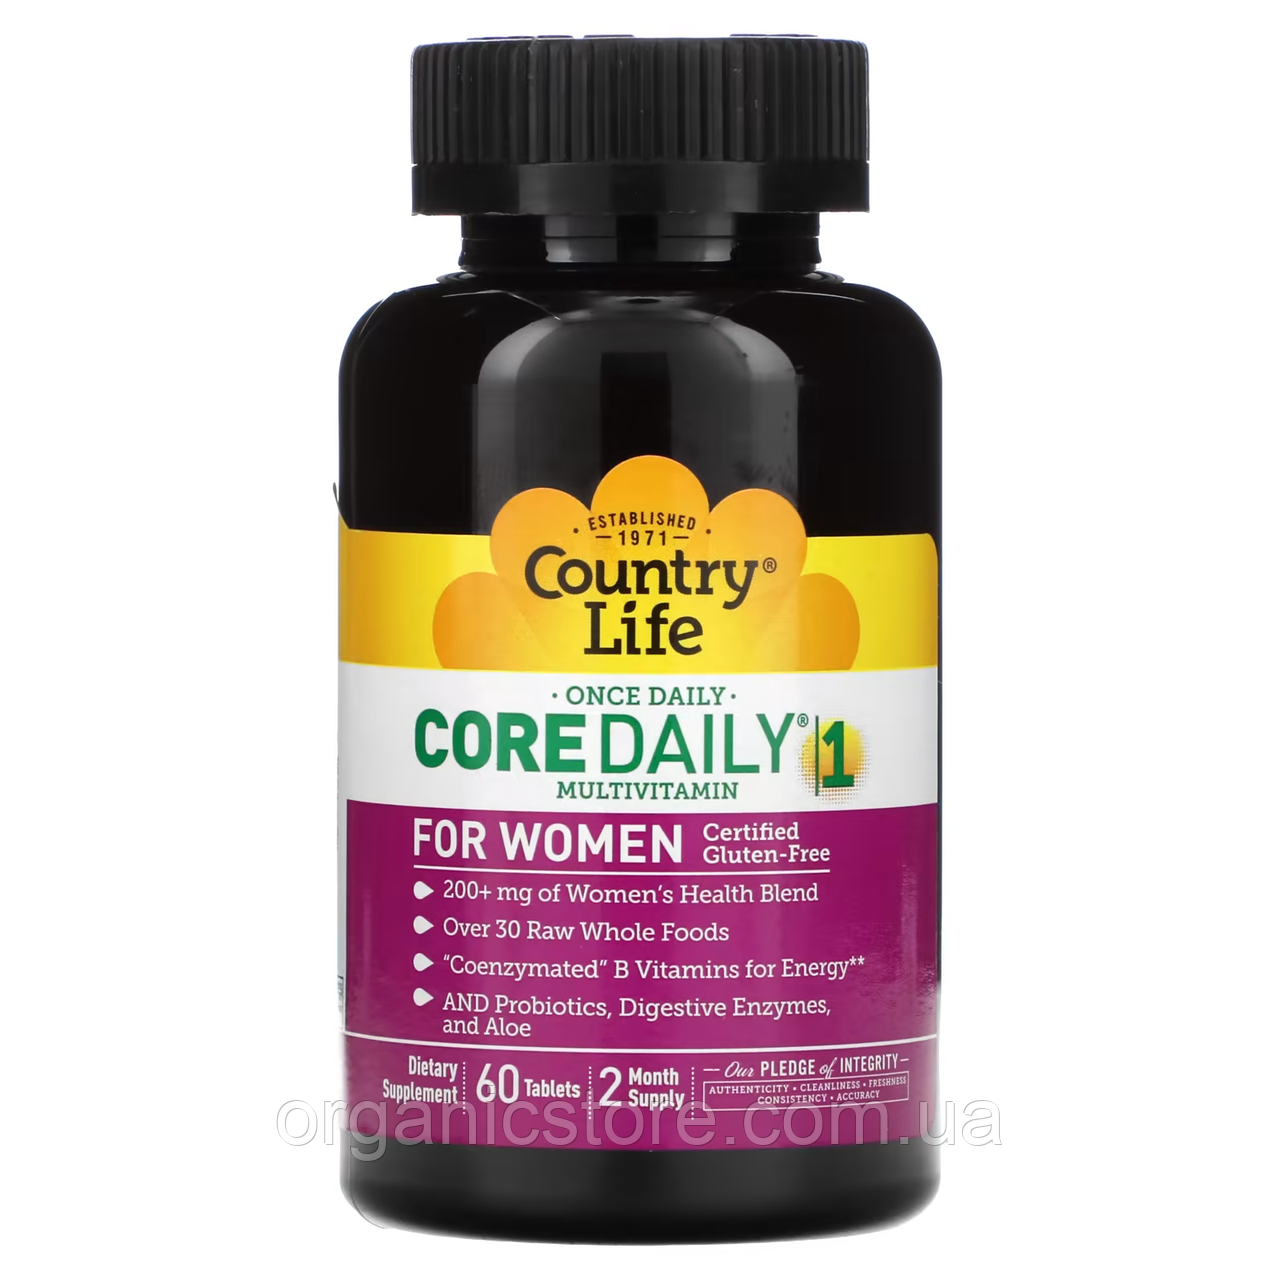 Мультивітаміни для жінок Core Daily-1, Country Life, 60 таблеток